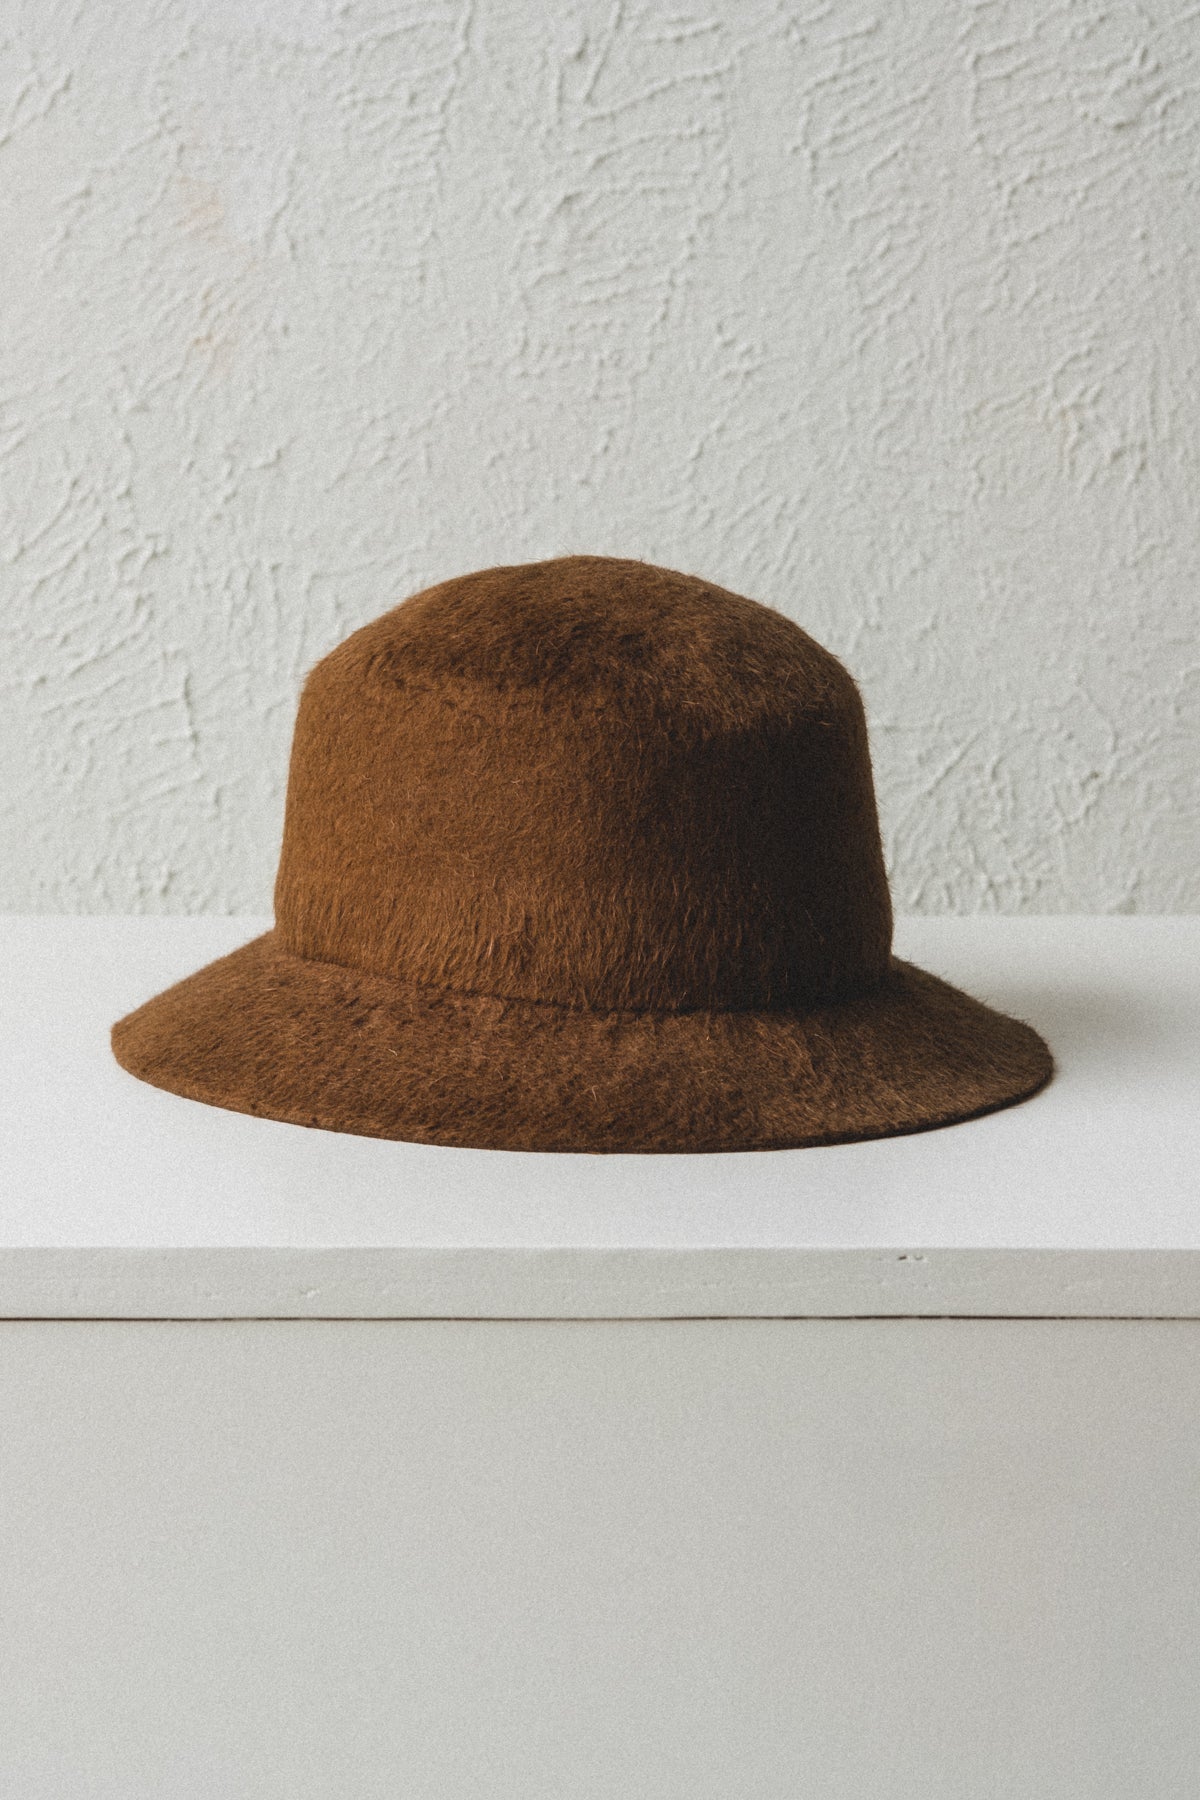 Pesaat Bow Women Bucket Hat (Coffee) - ShopStyle